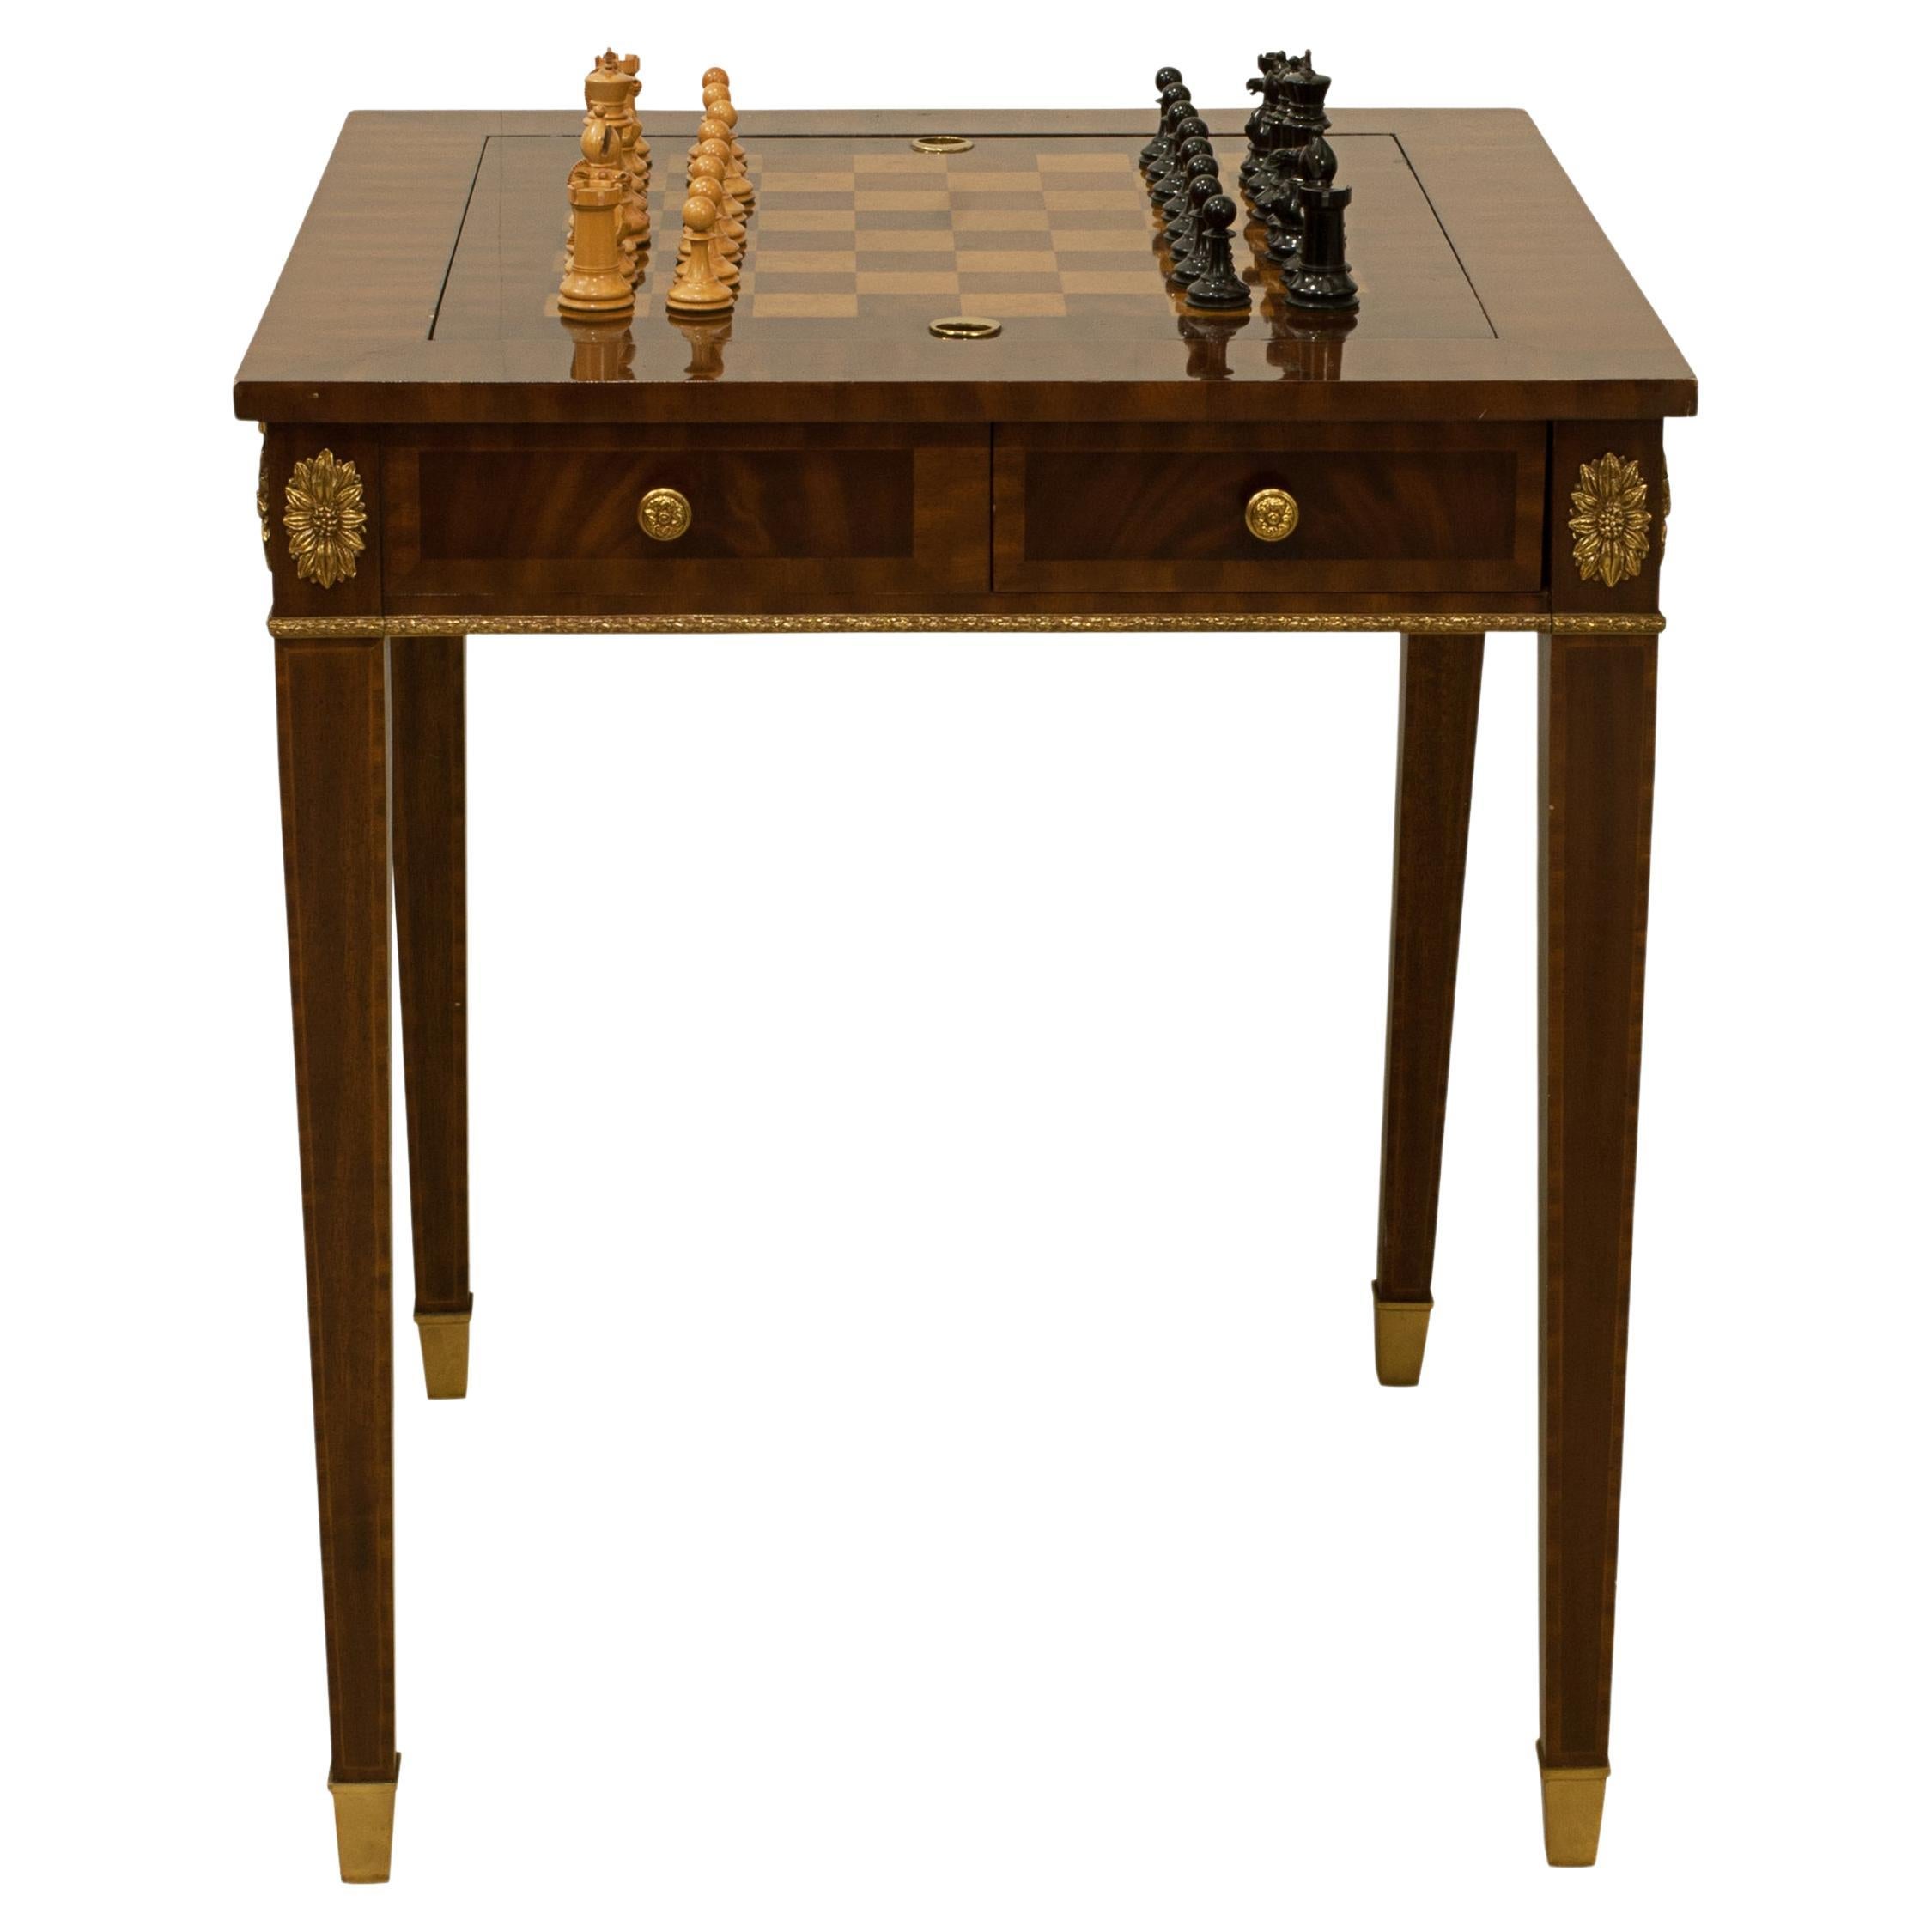 Spieltisch mit Schach- und Backgammon-Karton